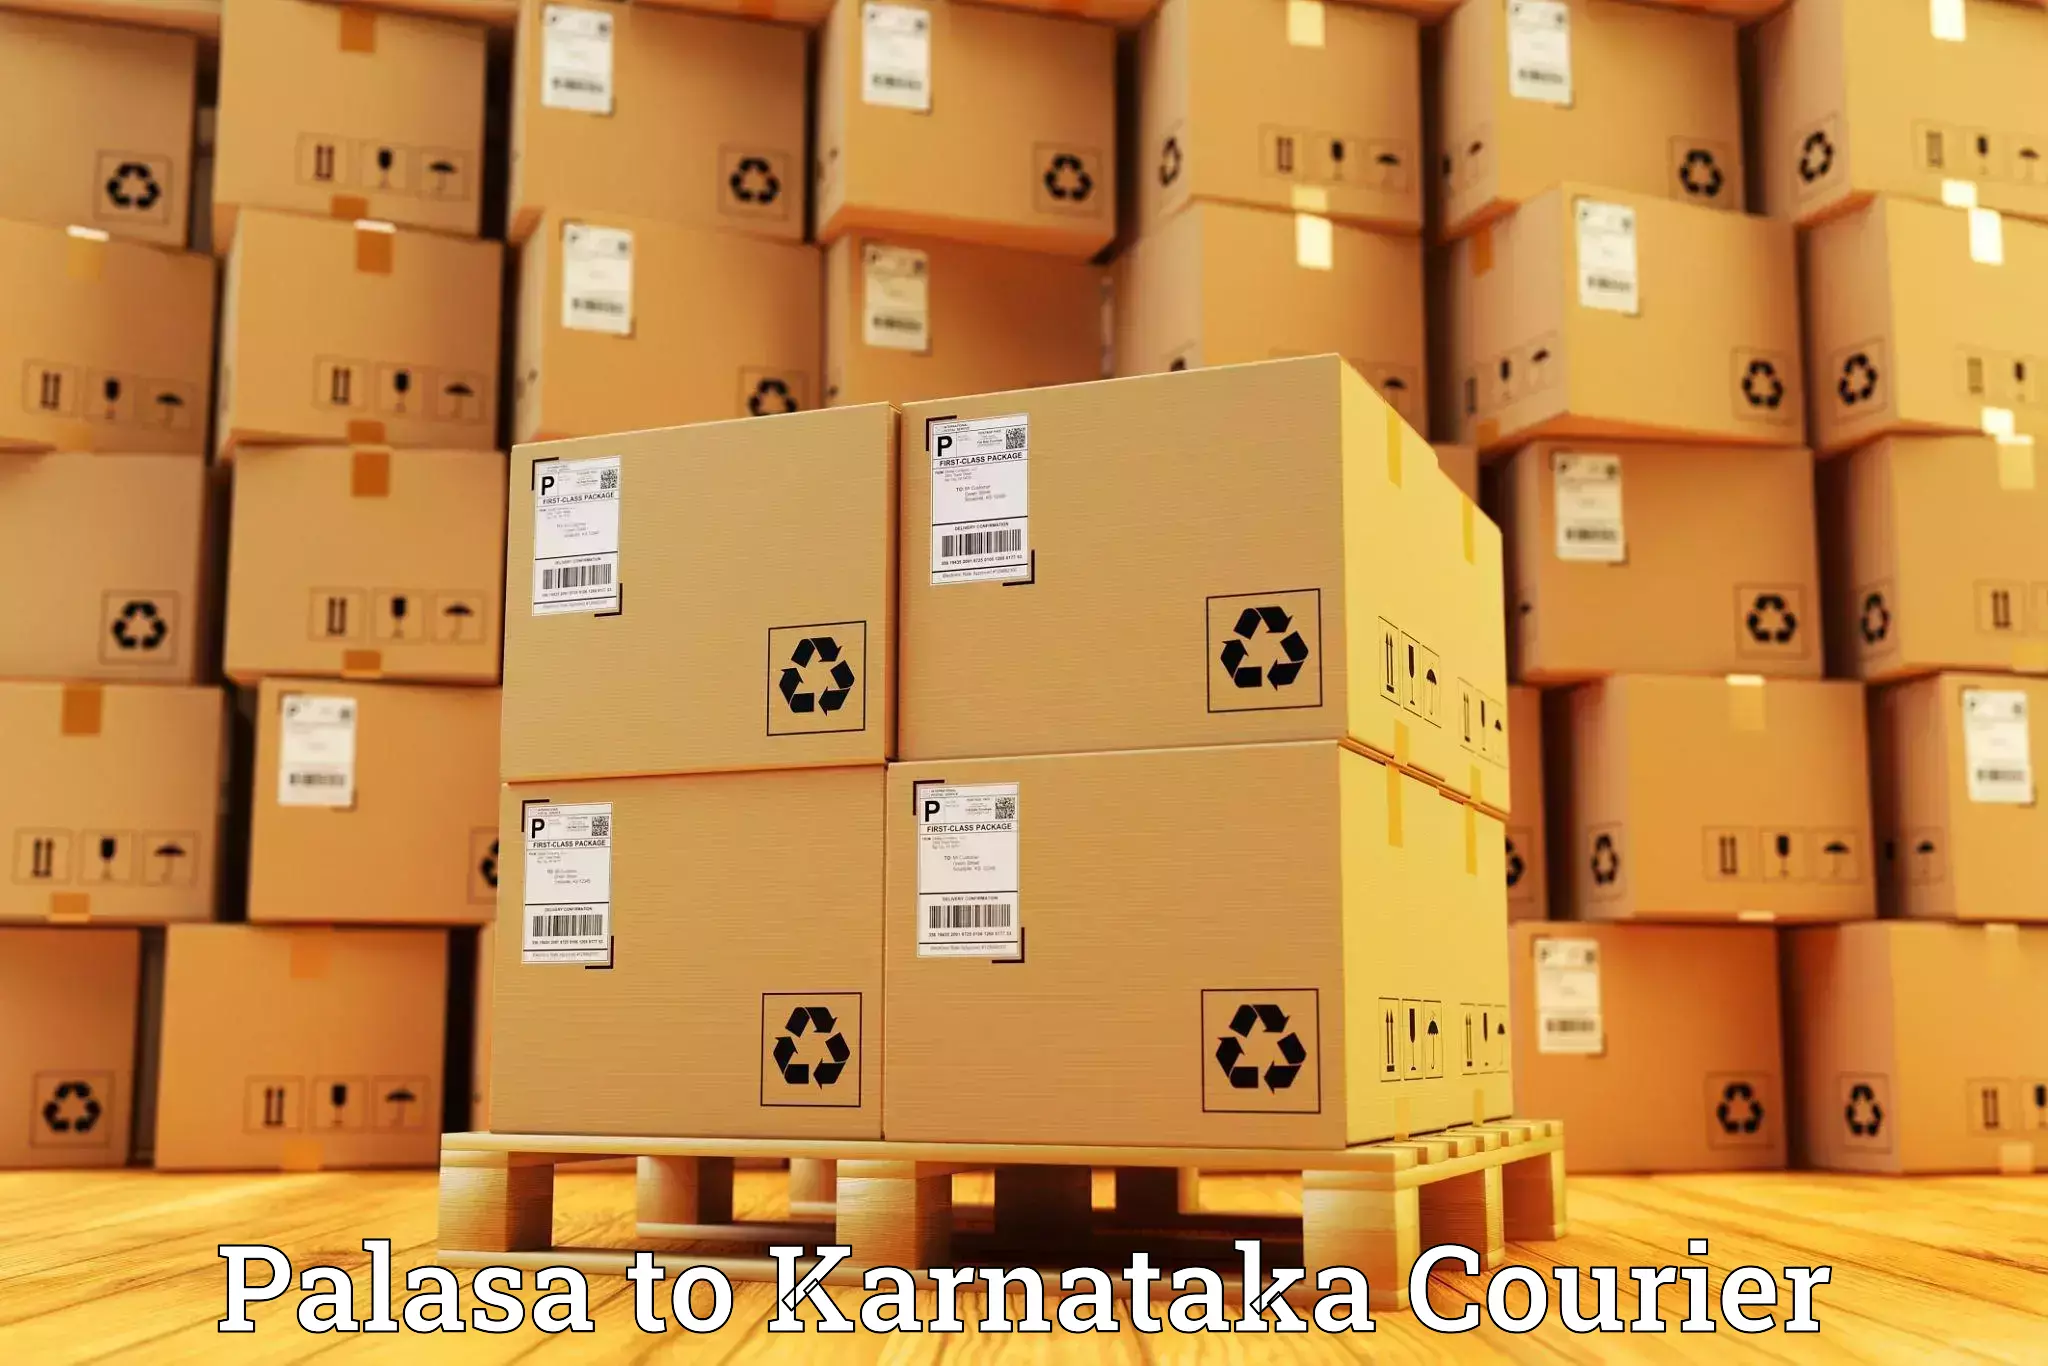 Express mail solutions Palasa to Karnataka